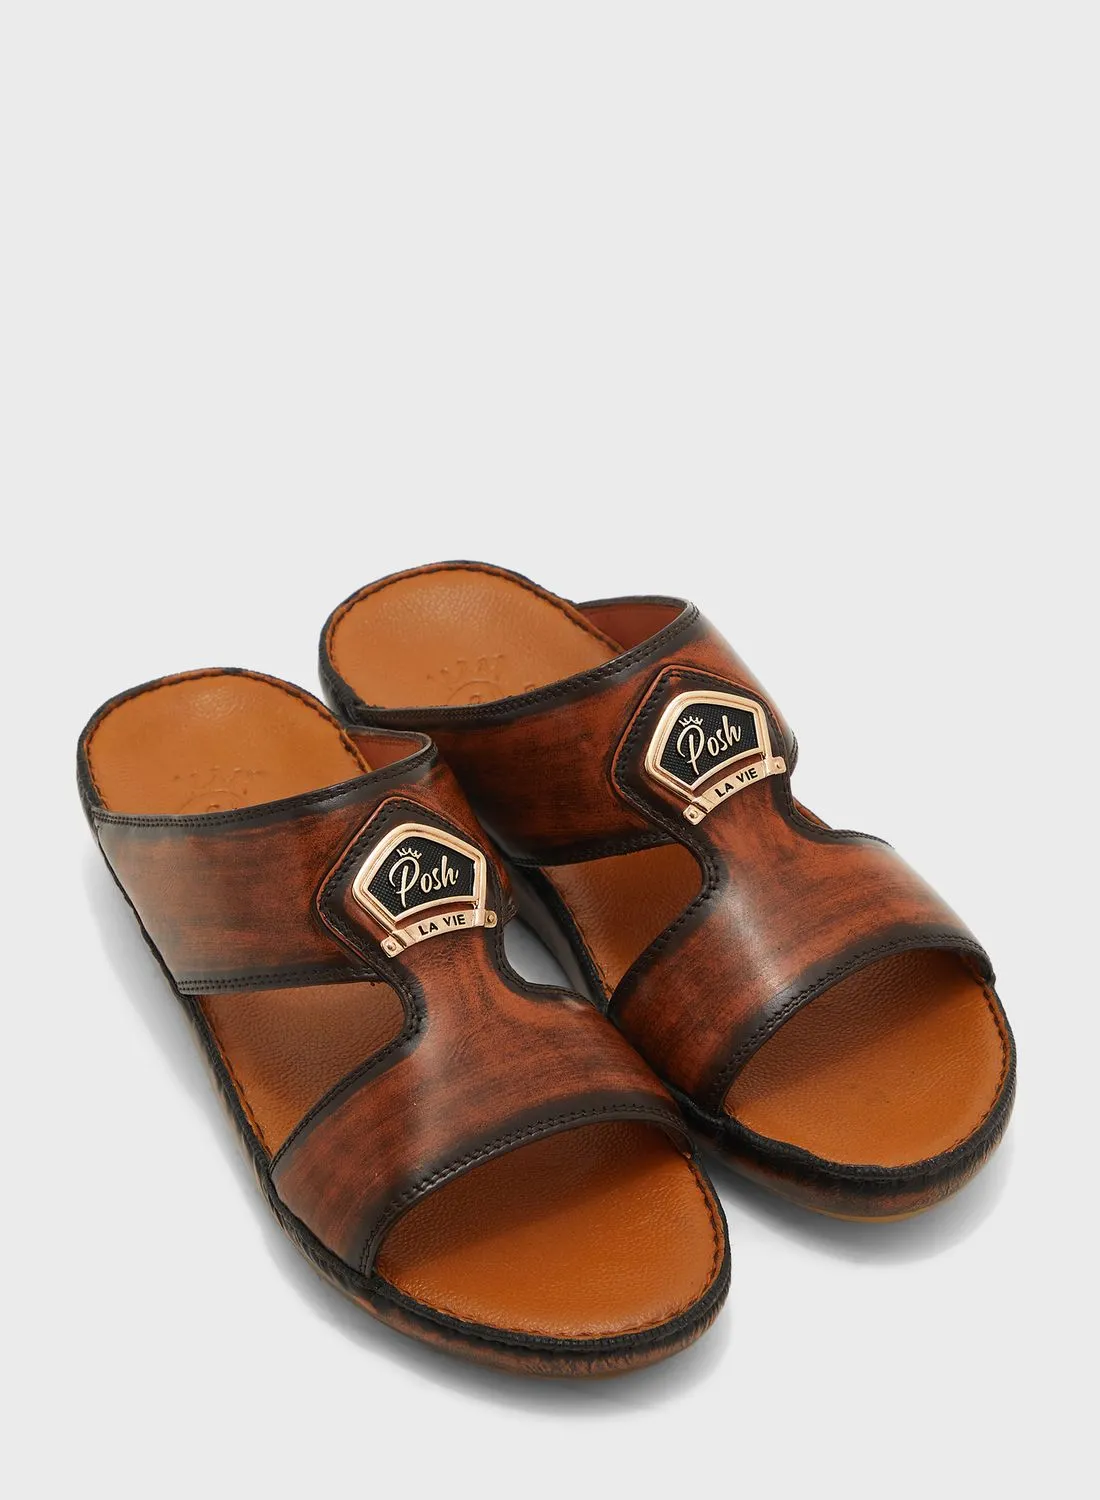 Posh La Vie Classy Arabic Sandals